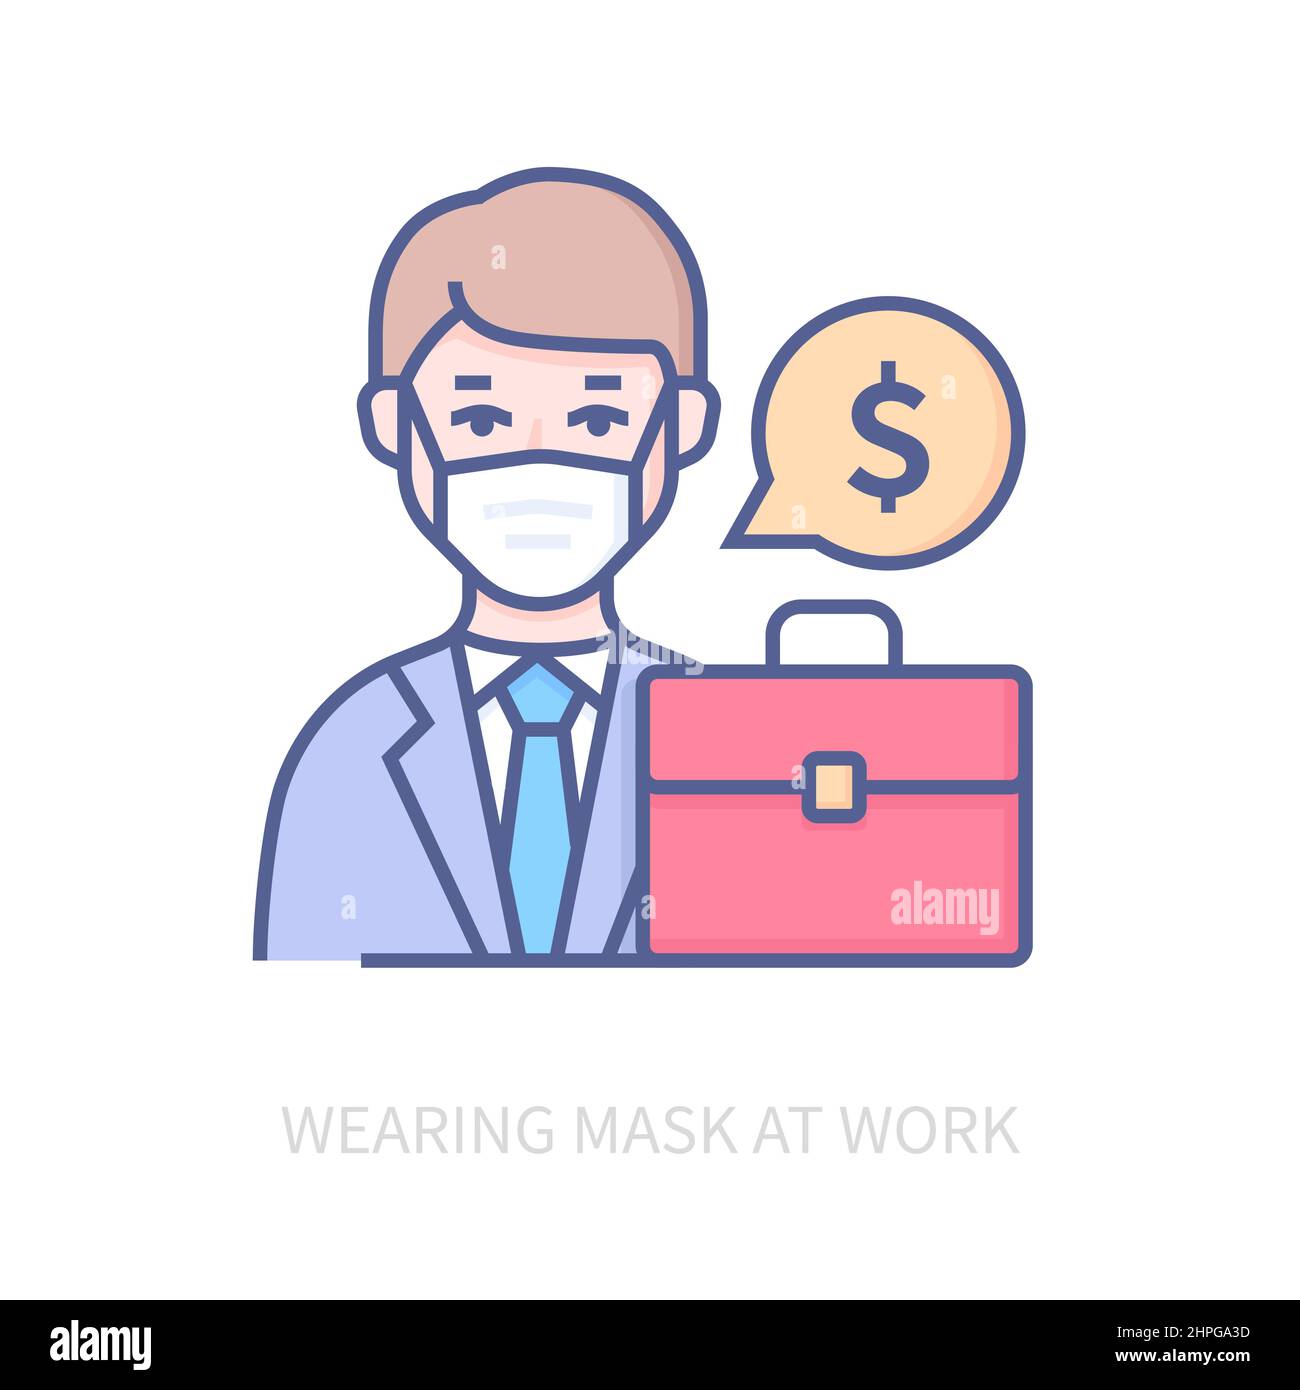 Das Tragen einer Maske bei der Arbeit - modernes farblich gestalterisches Symbol auf weißem Hintergrund. Ordentliches detailliertes Bild des gesundheitsbewussten Geschäftsmannes mit grundlegender Respi Stock Vektor